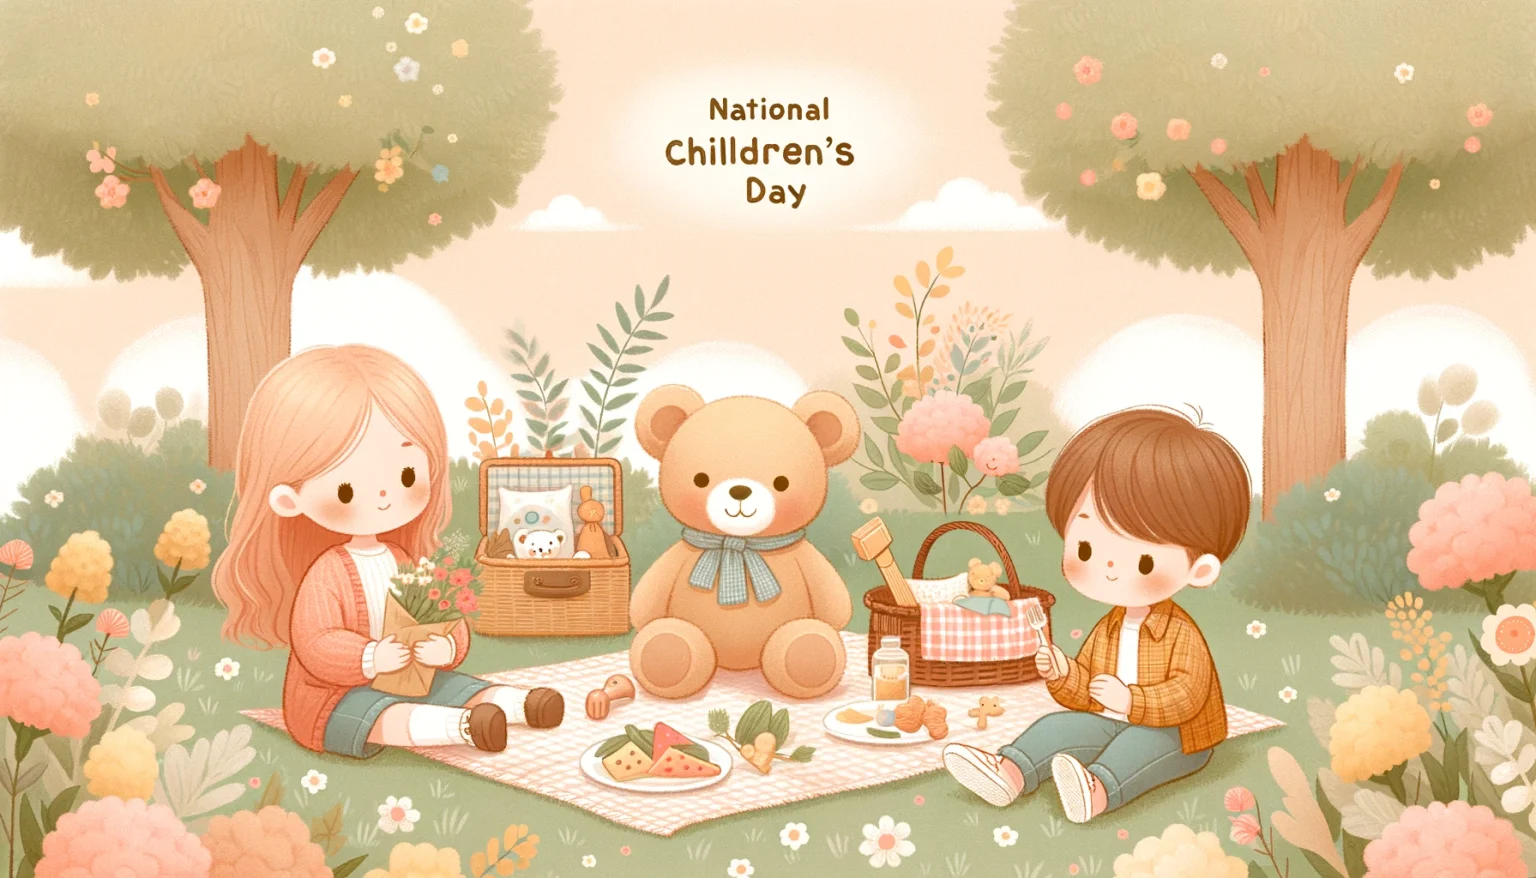 National Children’s Day: Cherishing Every Child